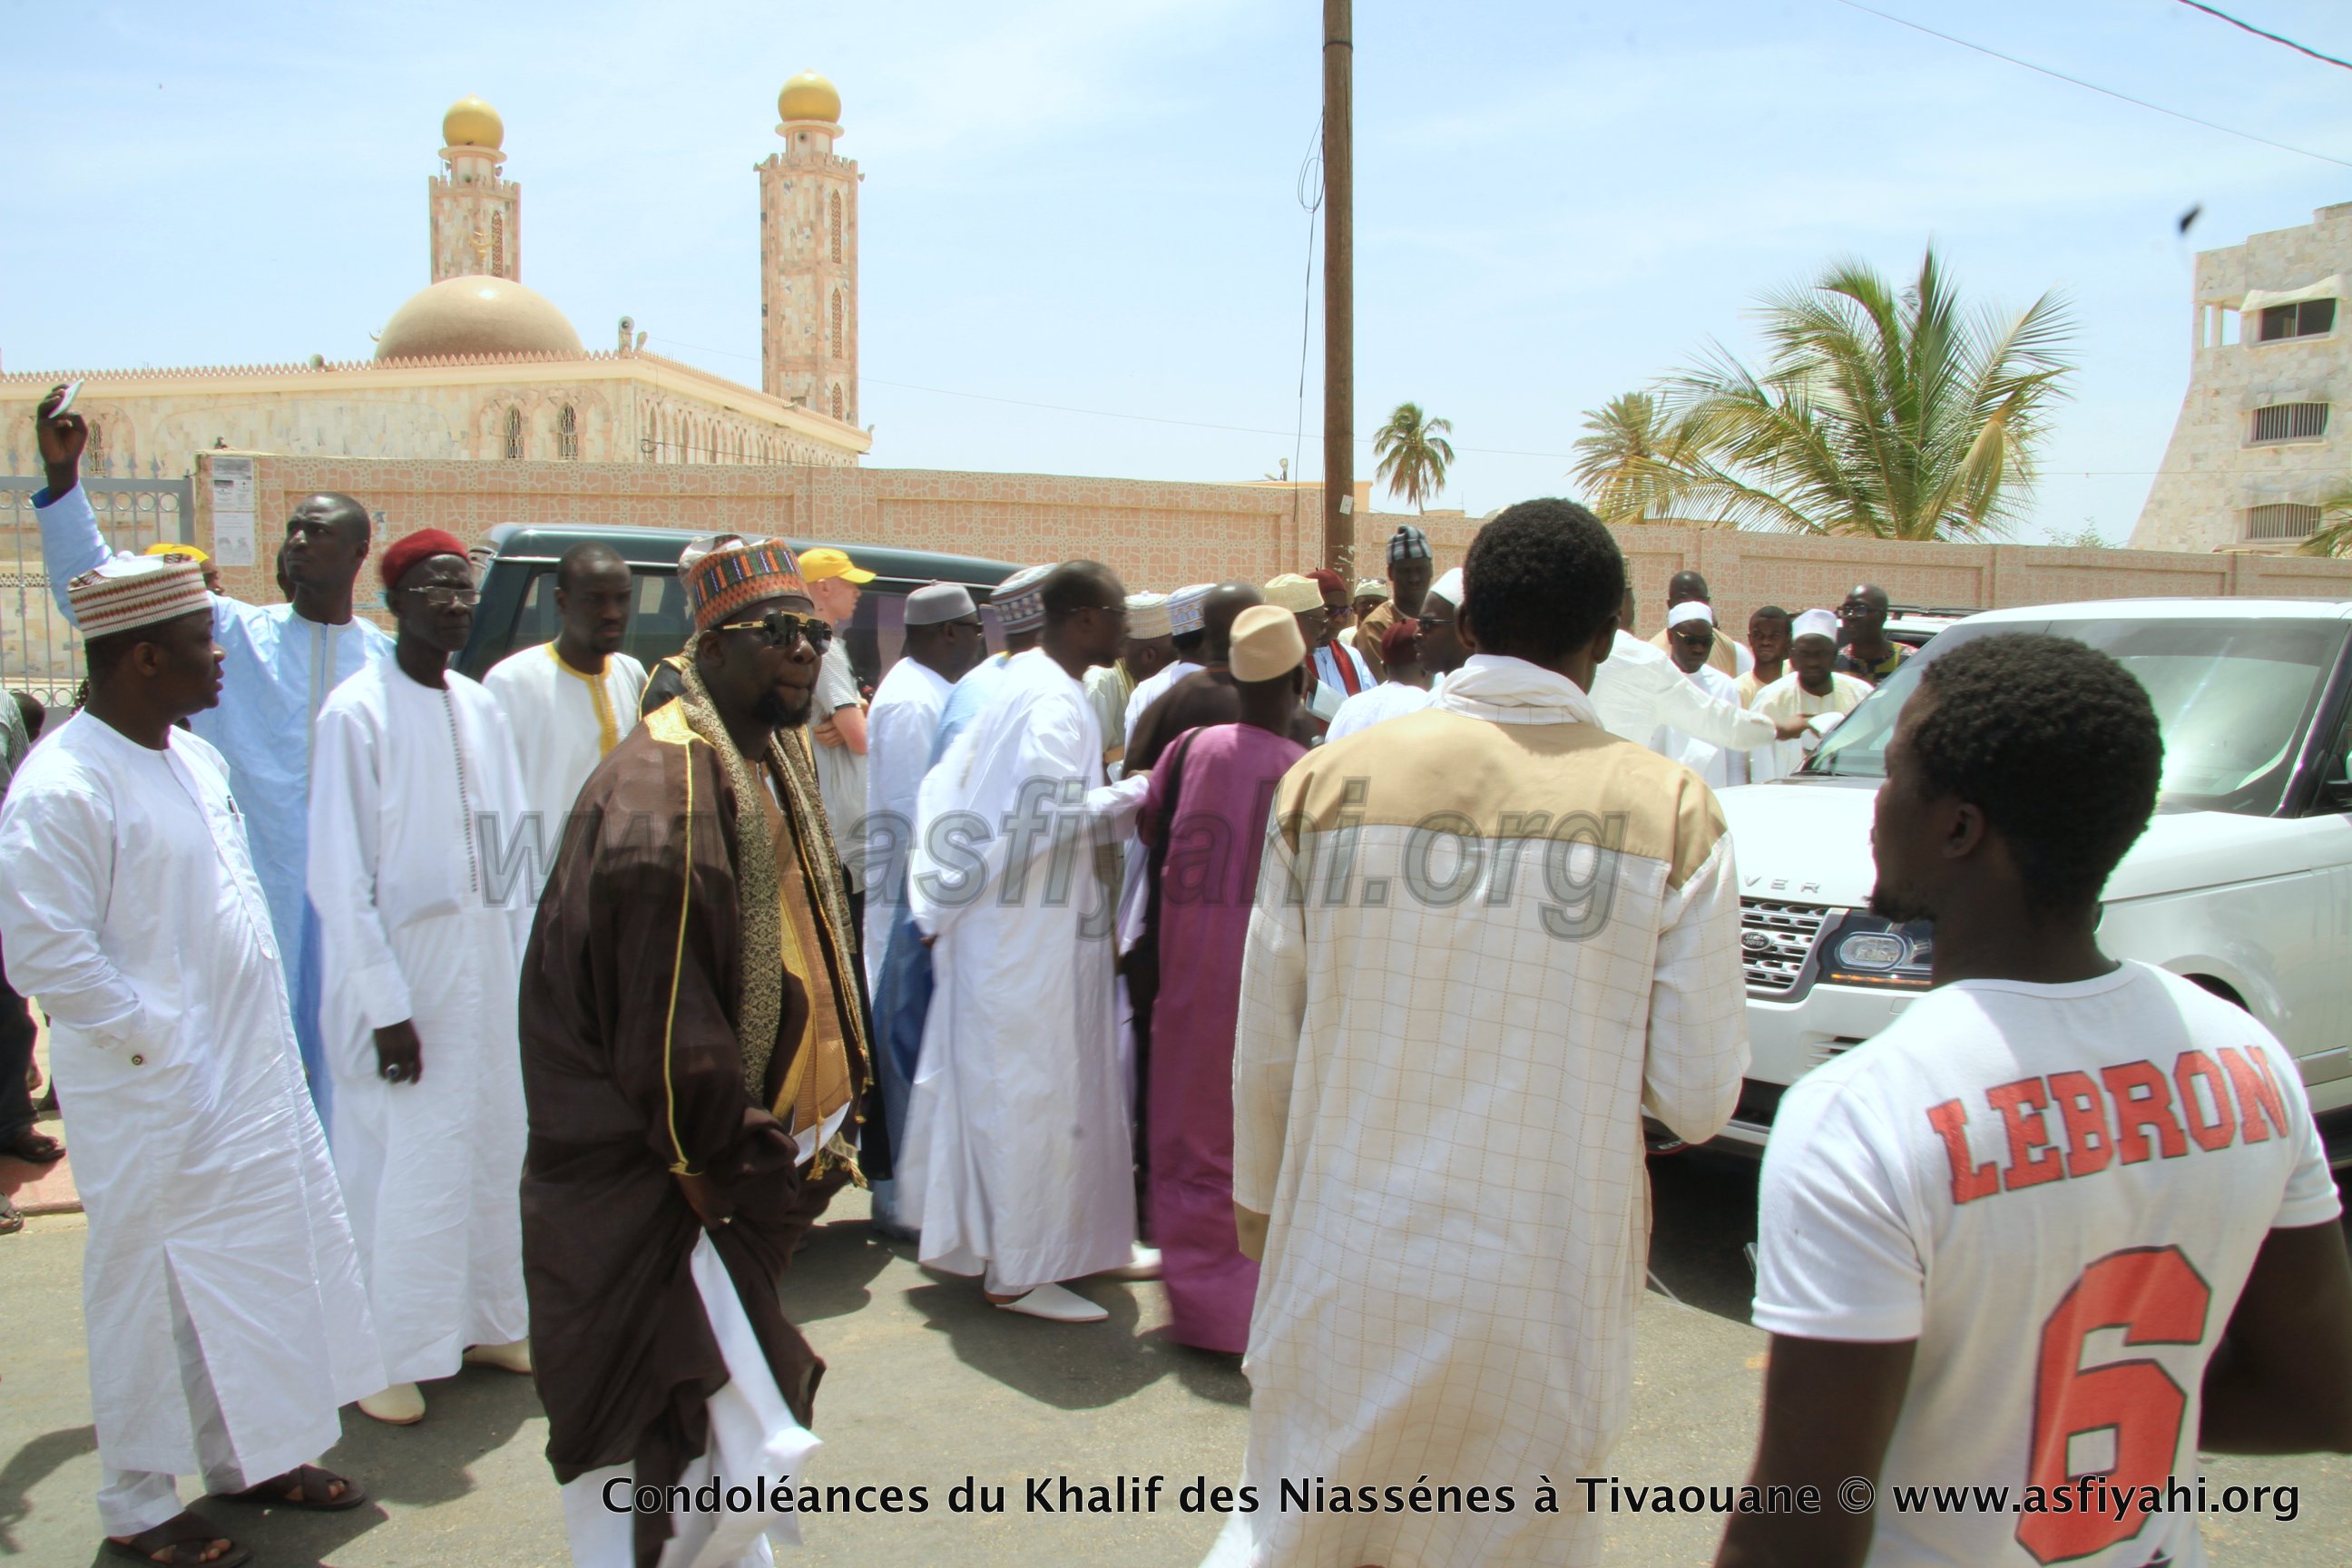 PHOTOS - TIVAOUANE - Les Images de la présentation de Condoléances du khalif de Médina Baye, Cheikh Ahmad Tidiane Niasse 